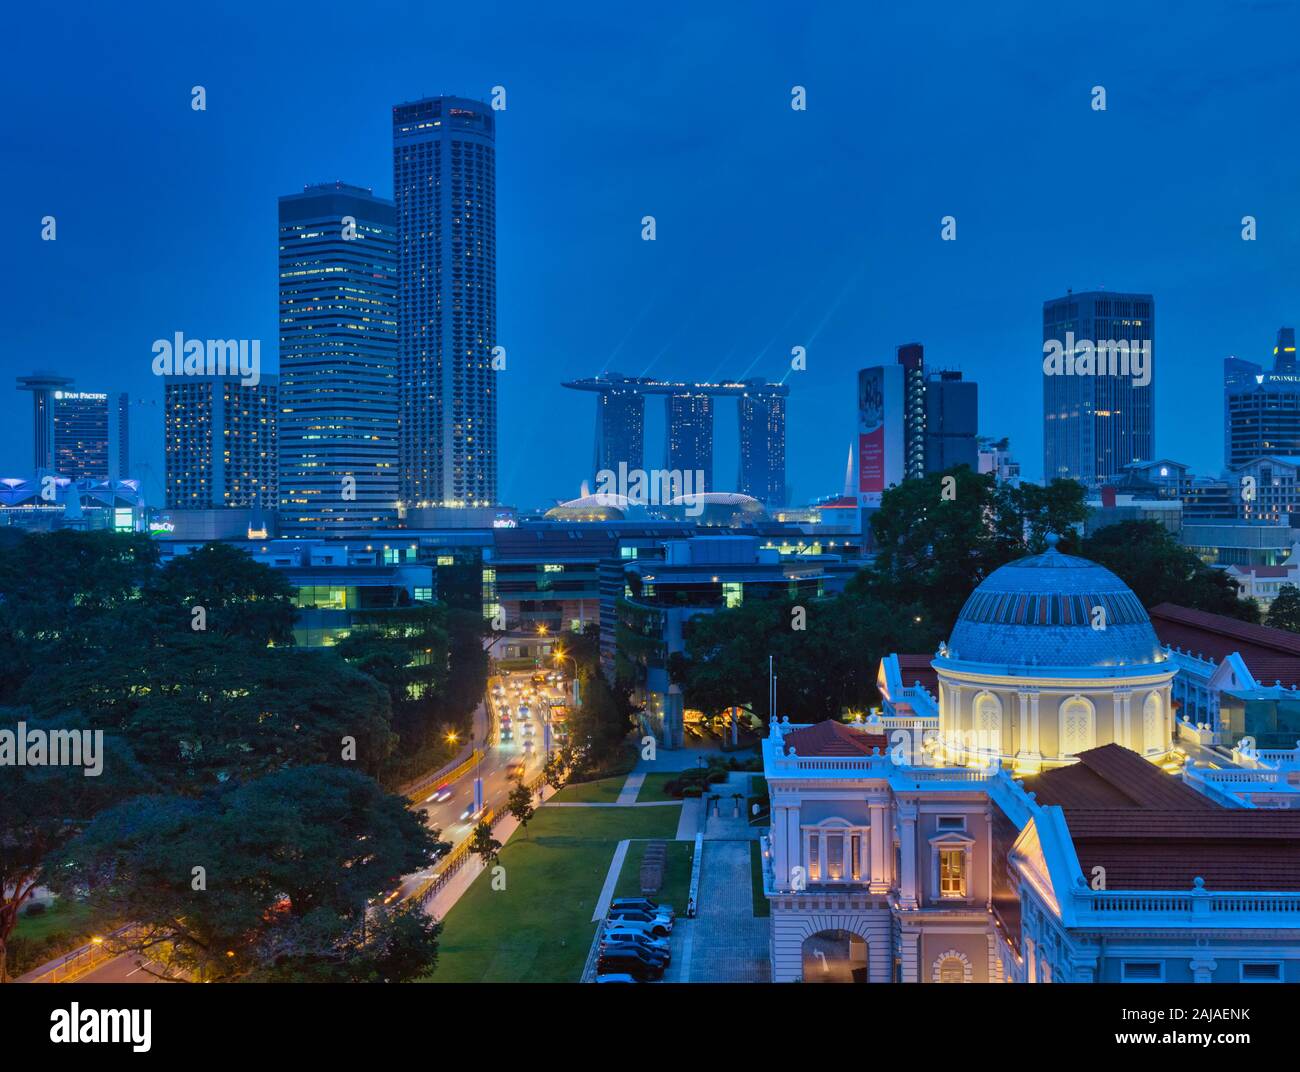 Scena notturna di Singapore. Alta vista complessiva, città di Singapore. Le tre torri a metà distanza appartengono al Marina Bay Sands Hotel e Skypark. Foto Stock